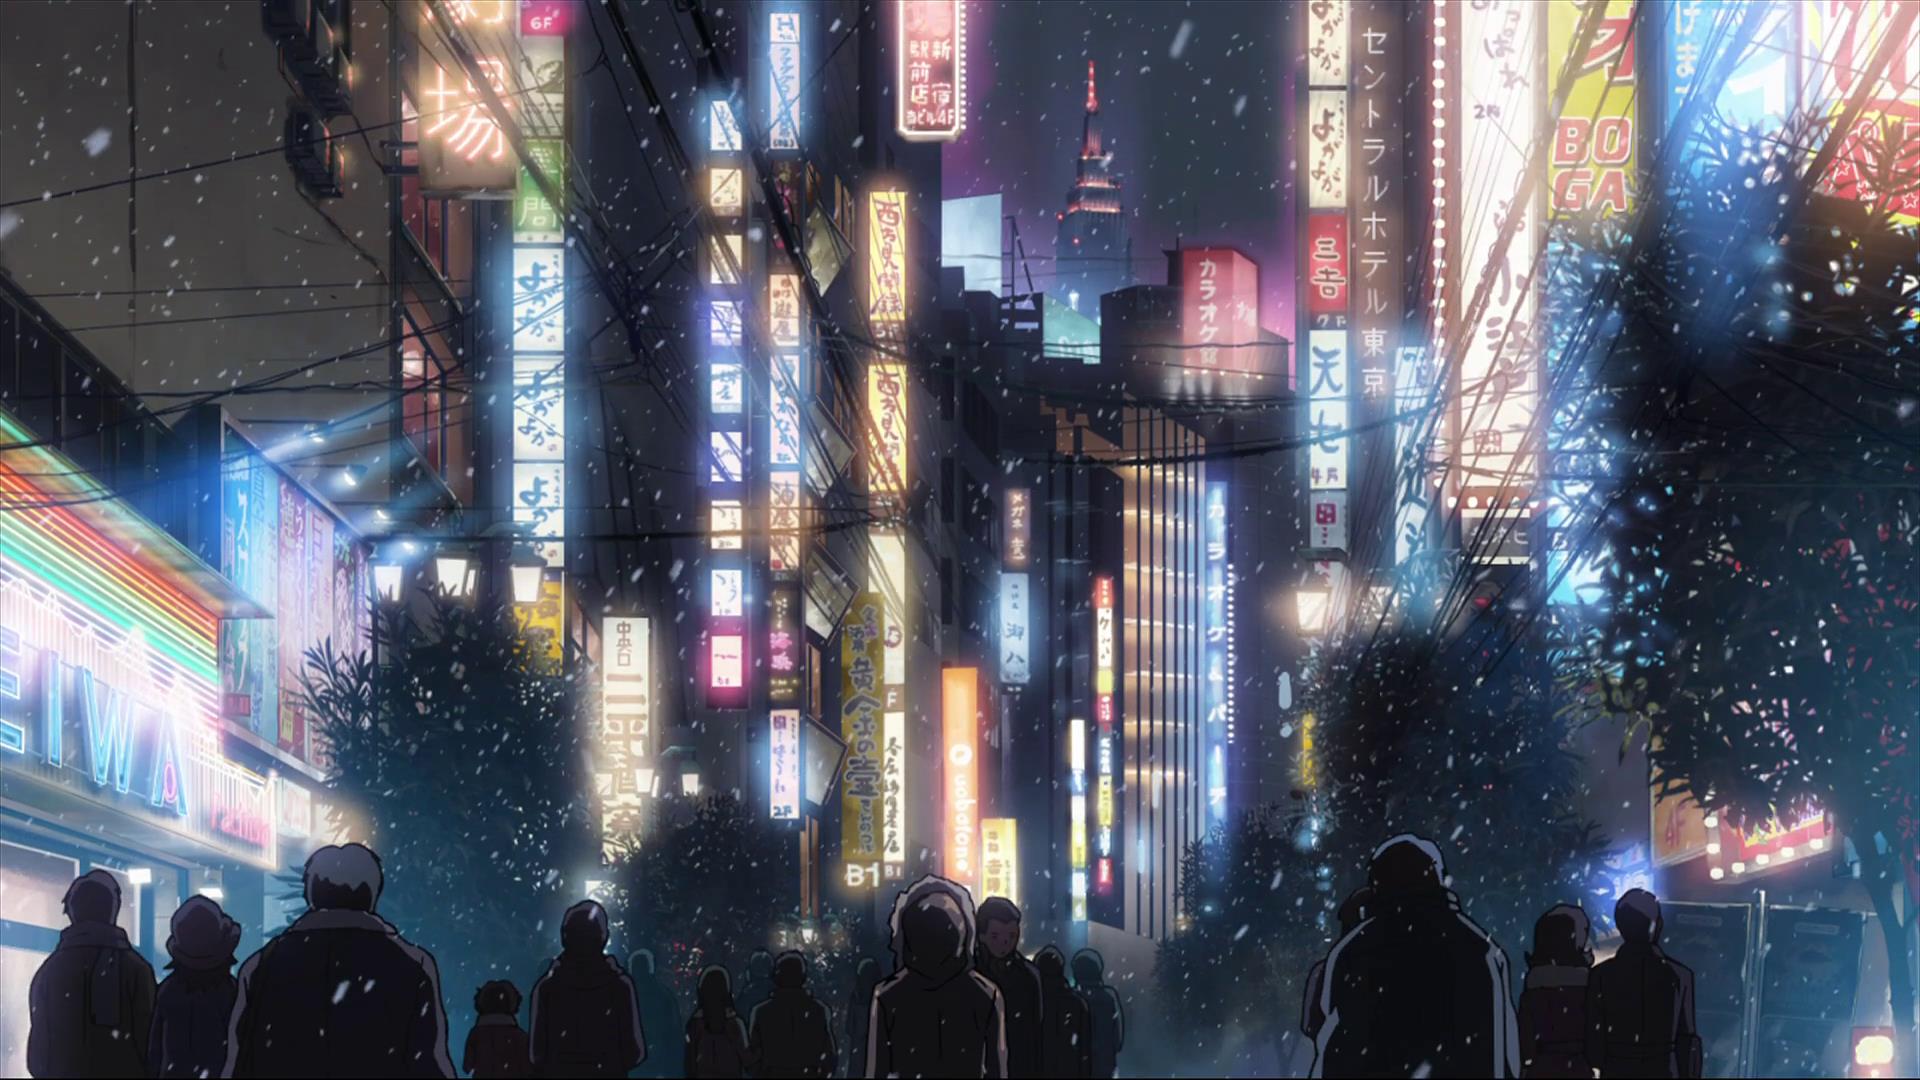 Hình nền anime thành phố - Khám phá thế giới đầy màu sắc và phong cảnh độc đáo của anime city wallpapers. Tận hưởng cảm giác thăng hoa với những hình nền anime thành phố đầy sáng tạo và phong cách riêng. Chào đón sự độc đáo và sẵn sàng khám phá cùng những bức hình đa dạng và đẹp mắt.